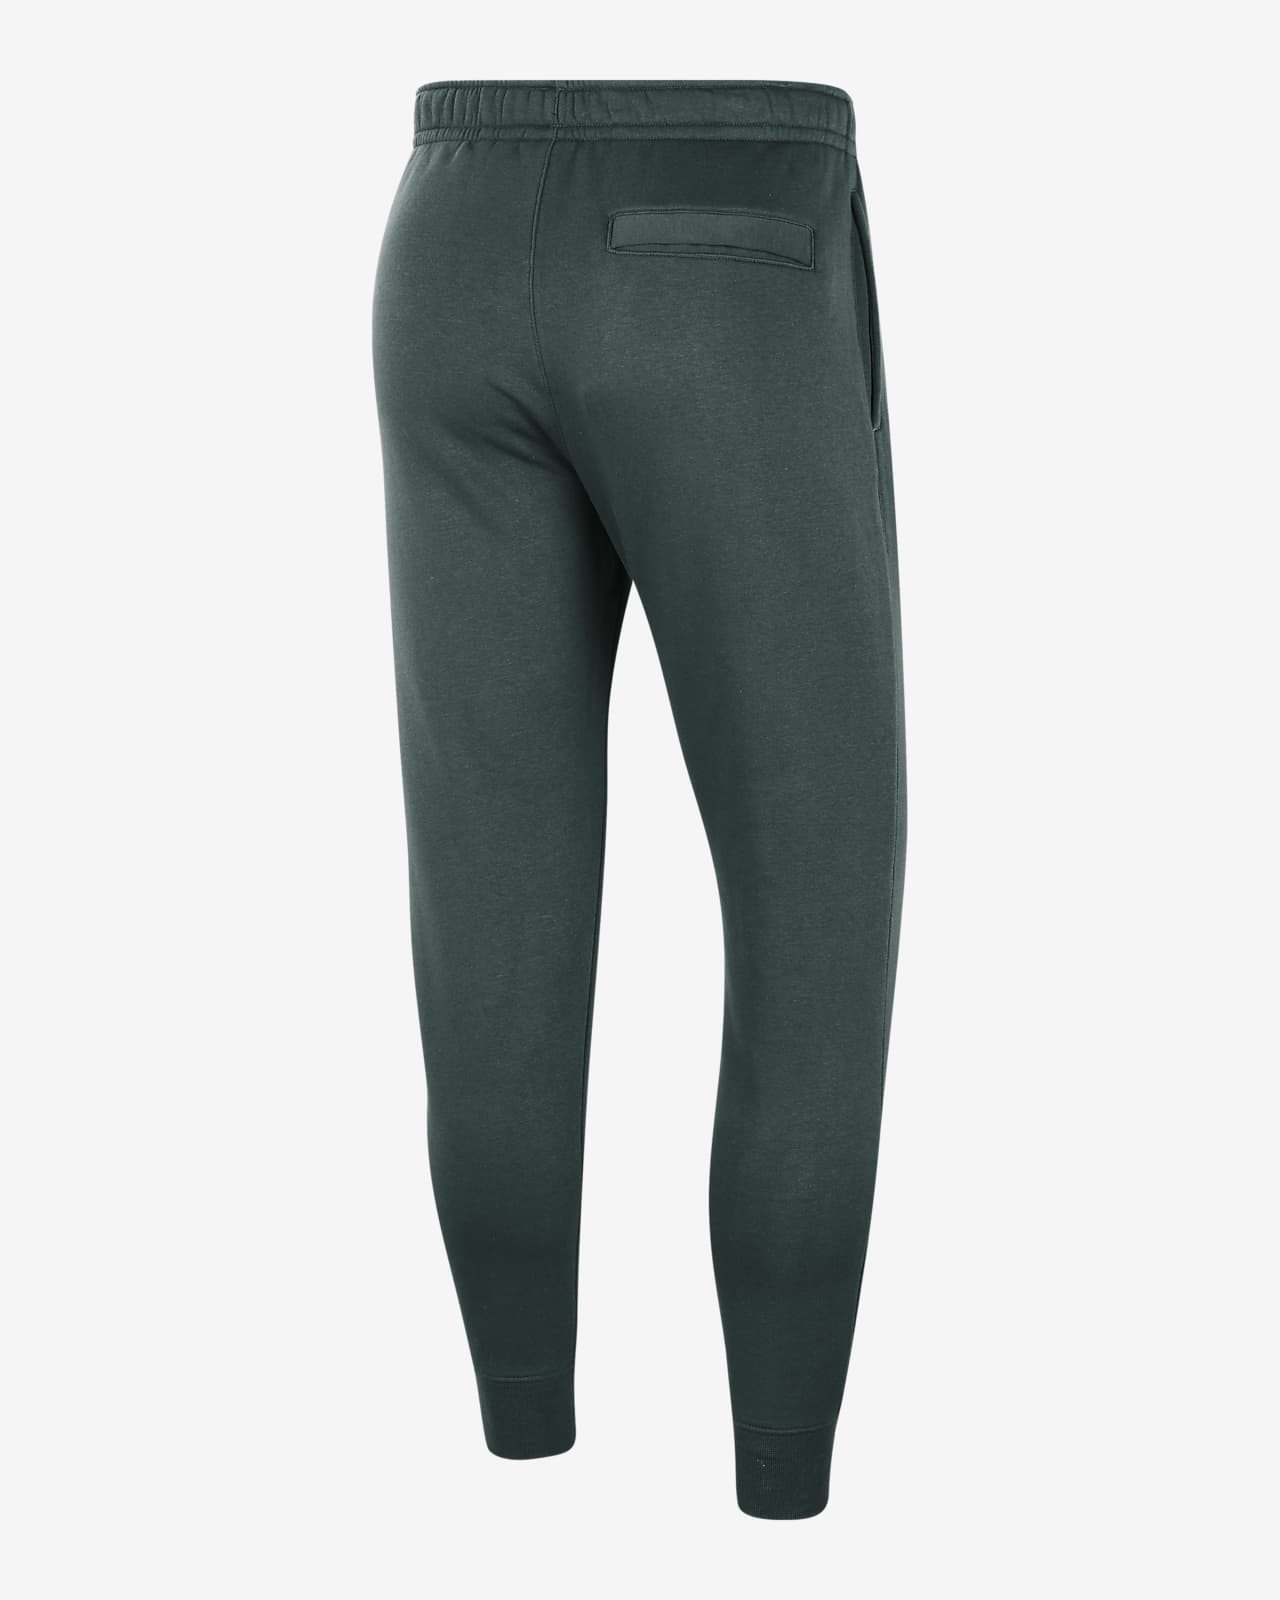 Nike Sportswear Leggings - Trousers - fir/dark green 